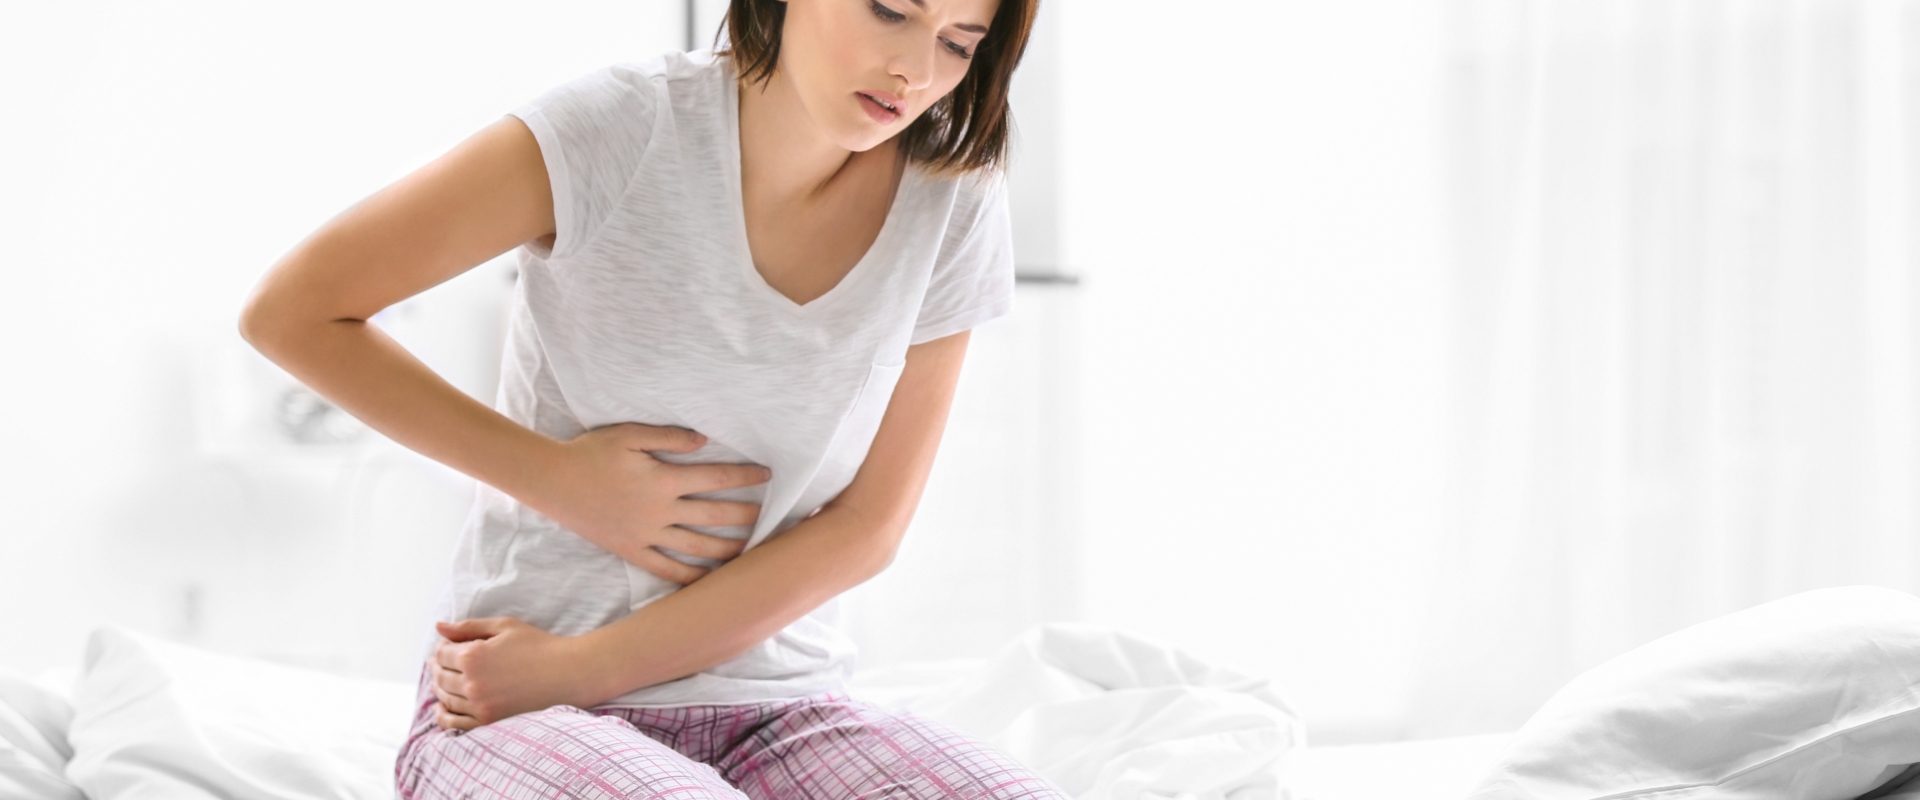 Przepuklina brzuszna - przyczyny, objawy, leczenie. Kobieta siedzi w piżamie na łóżku i trzyma się za bolący brzuch.